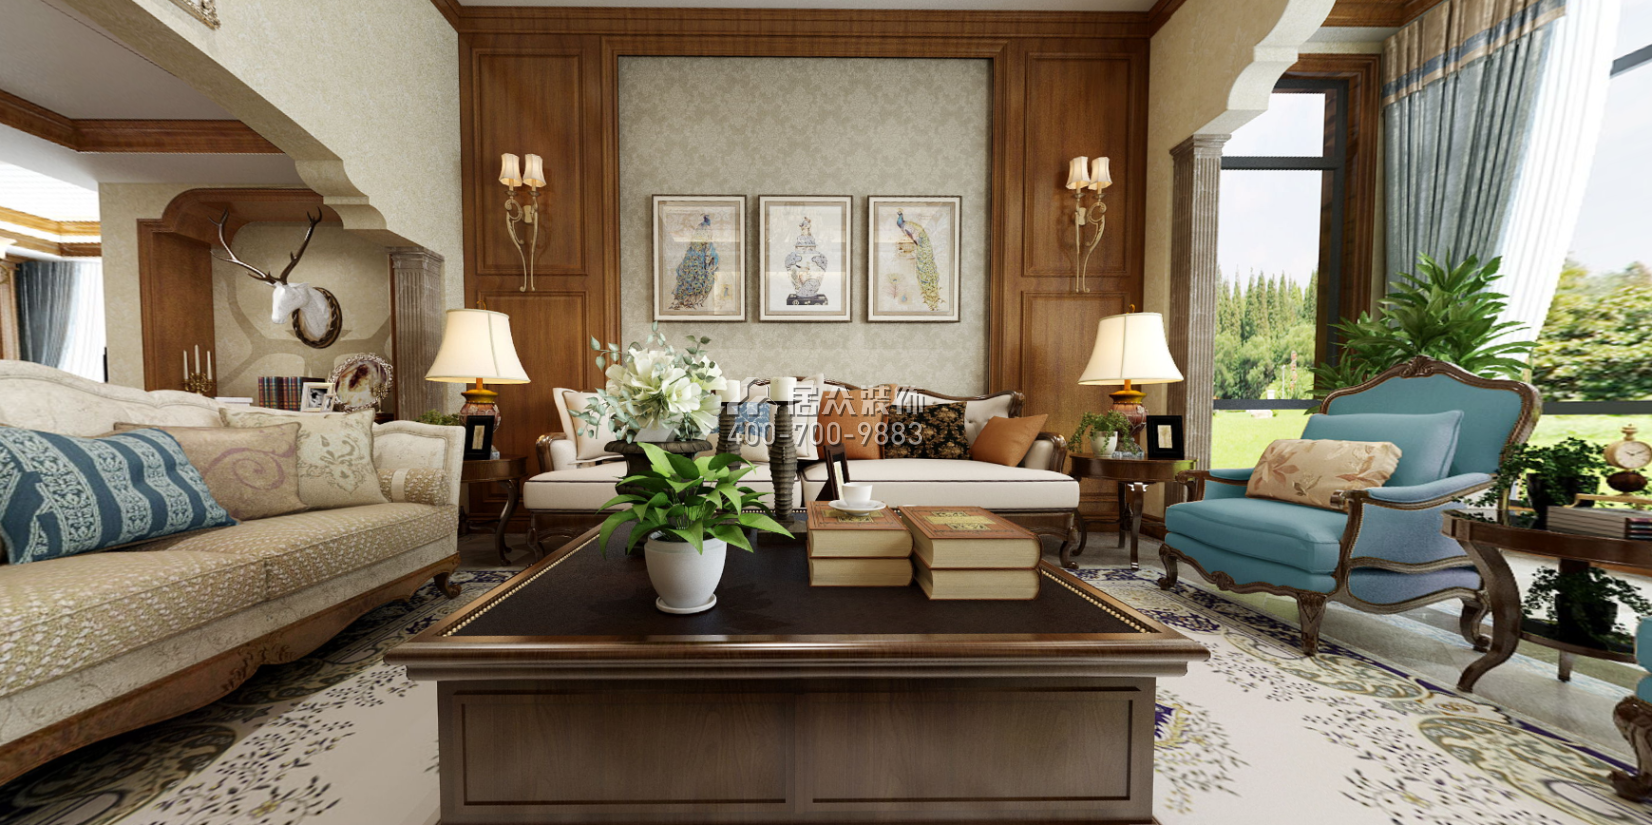 托斯卡納320平方米美式風格別墅戶型客廳裝修效果圖